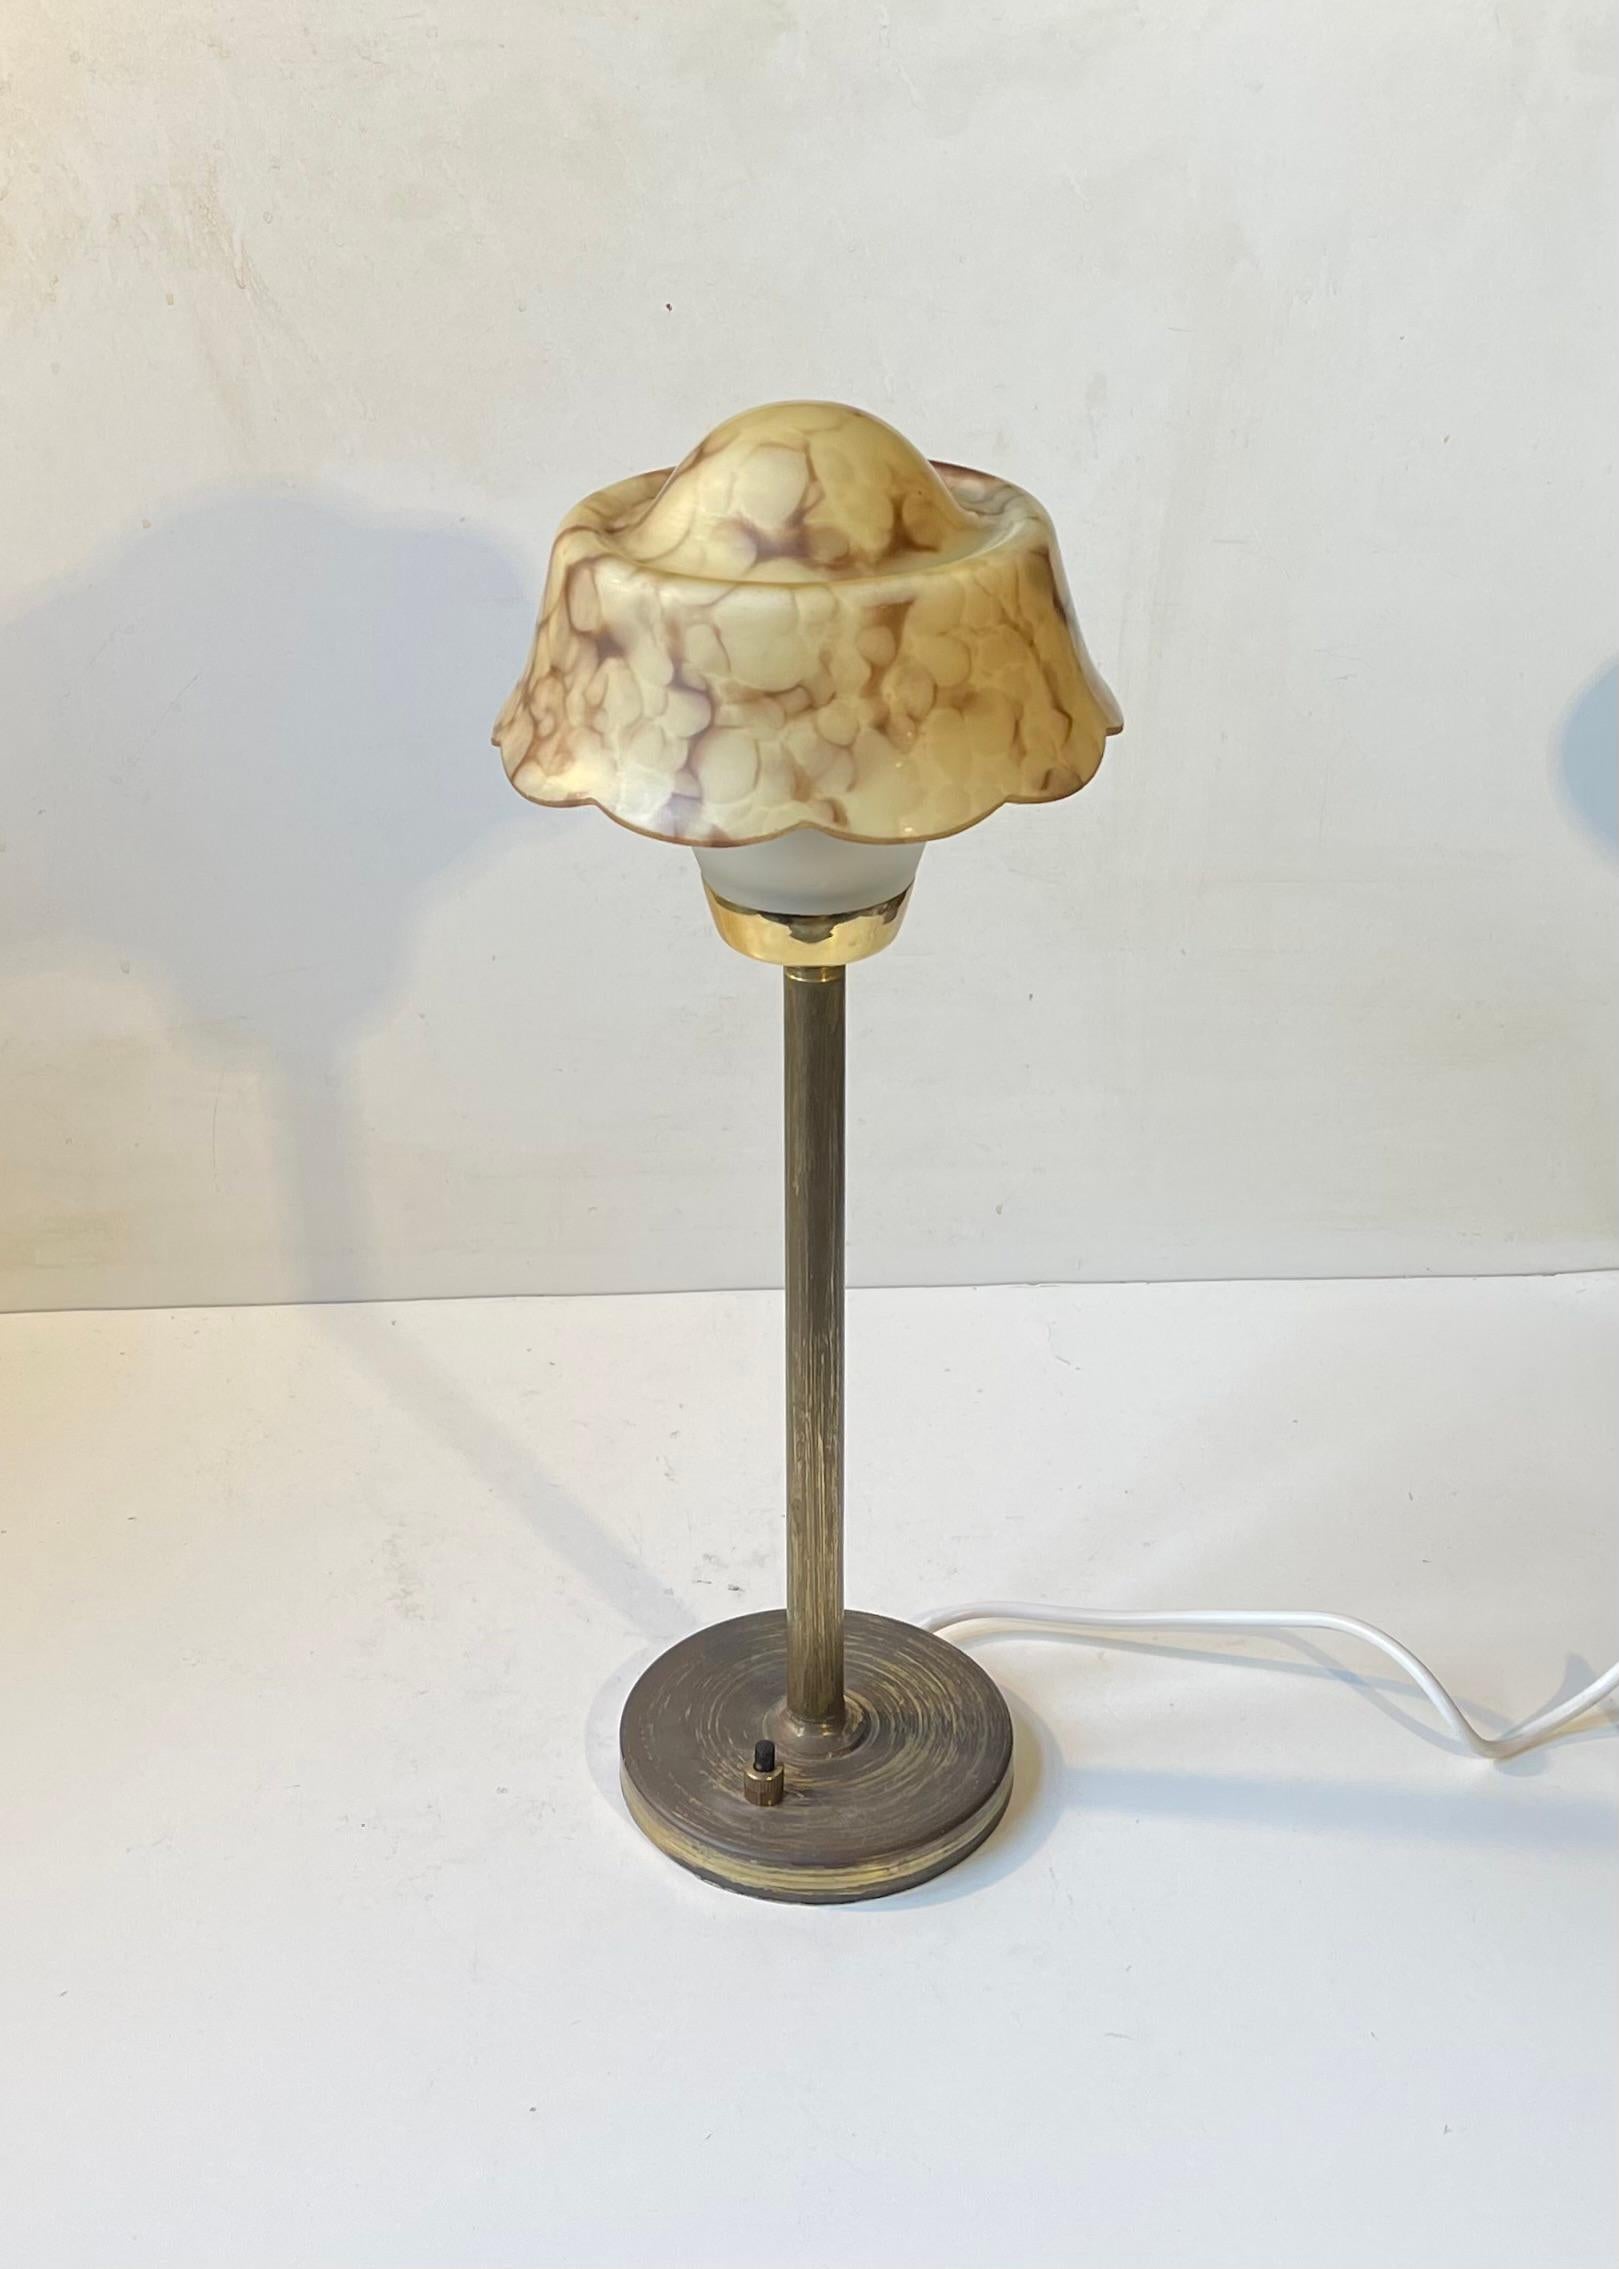 Lampe de bureau de style Art déco fabriquée par Fog et Mørup au Danemark dans les années 1940. La base et la tige sont en laiton patiné. L'emblématique abat-jour en verre opalin marbré ressemble à un œuf au plat, d'où son nom commun officieux :